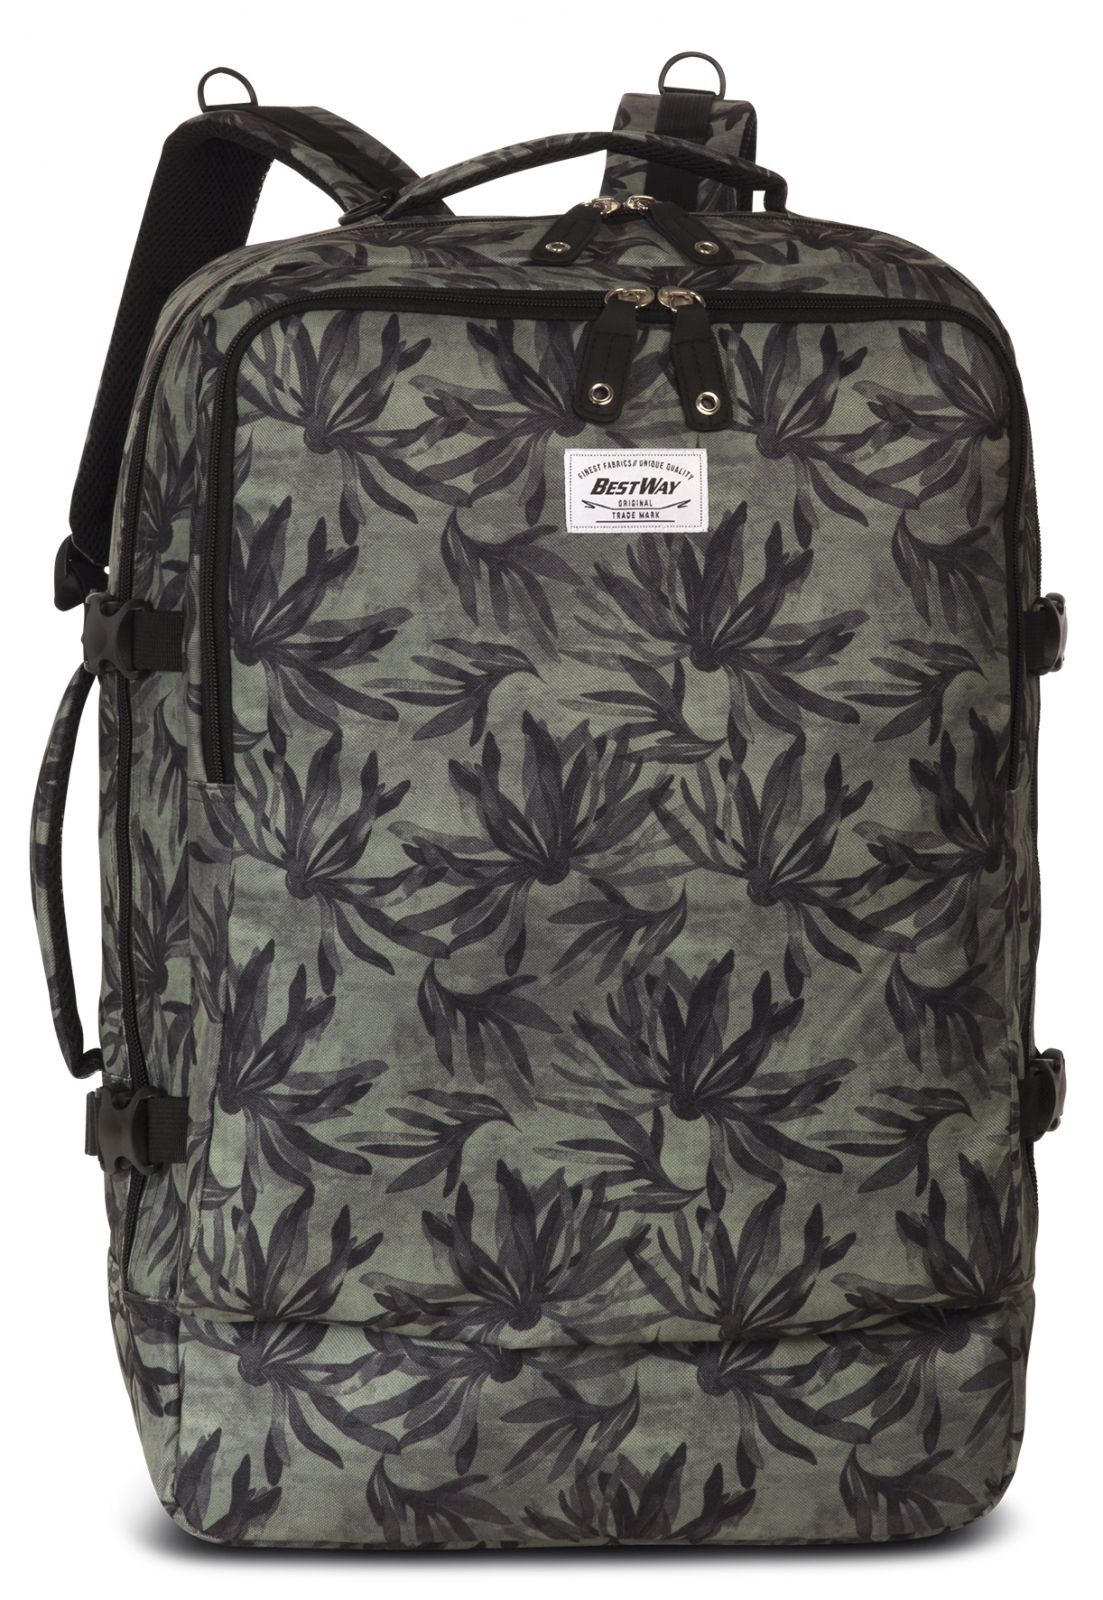 Příruční zavazadlo - batoh Cabin PRO 40252-0126 54x35x20 black / oliv-green